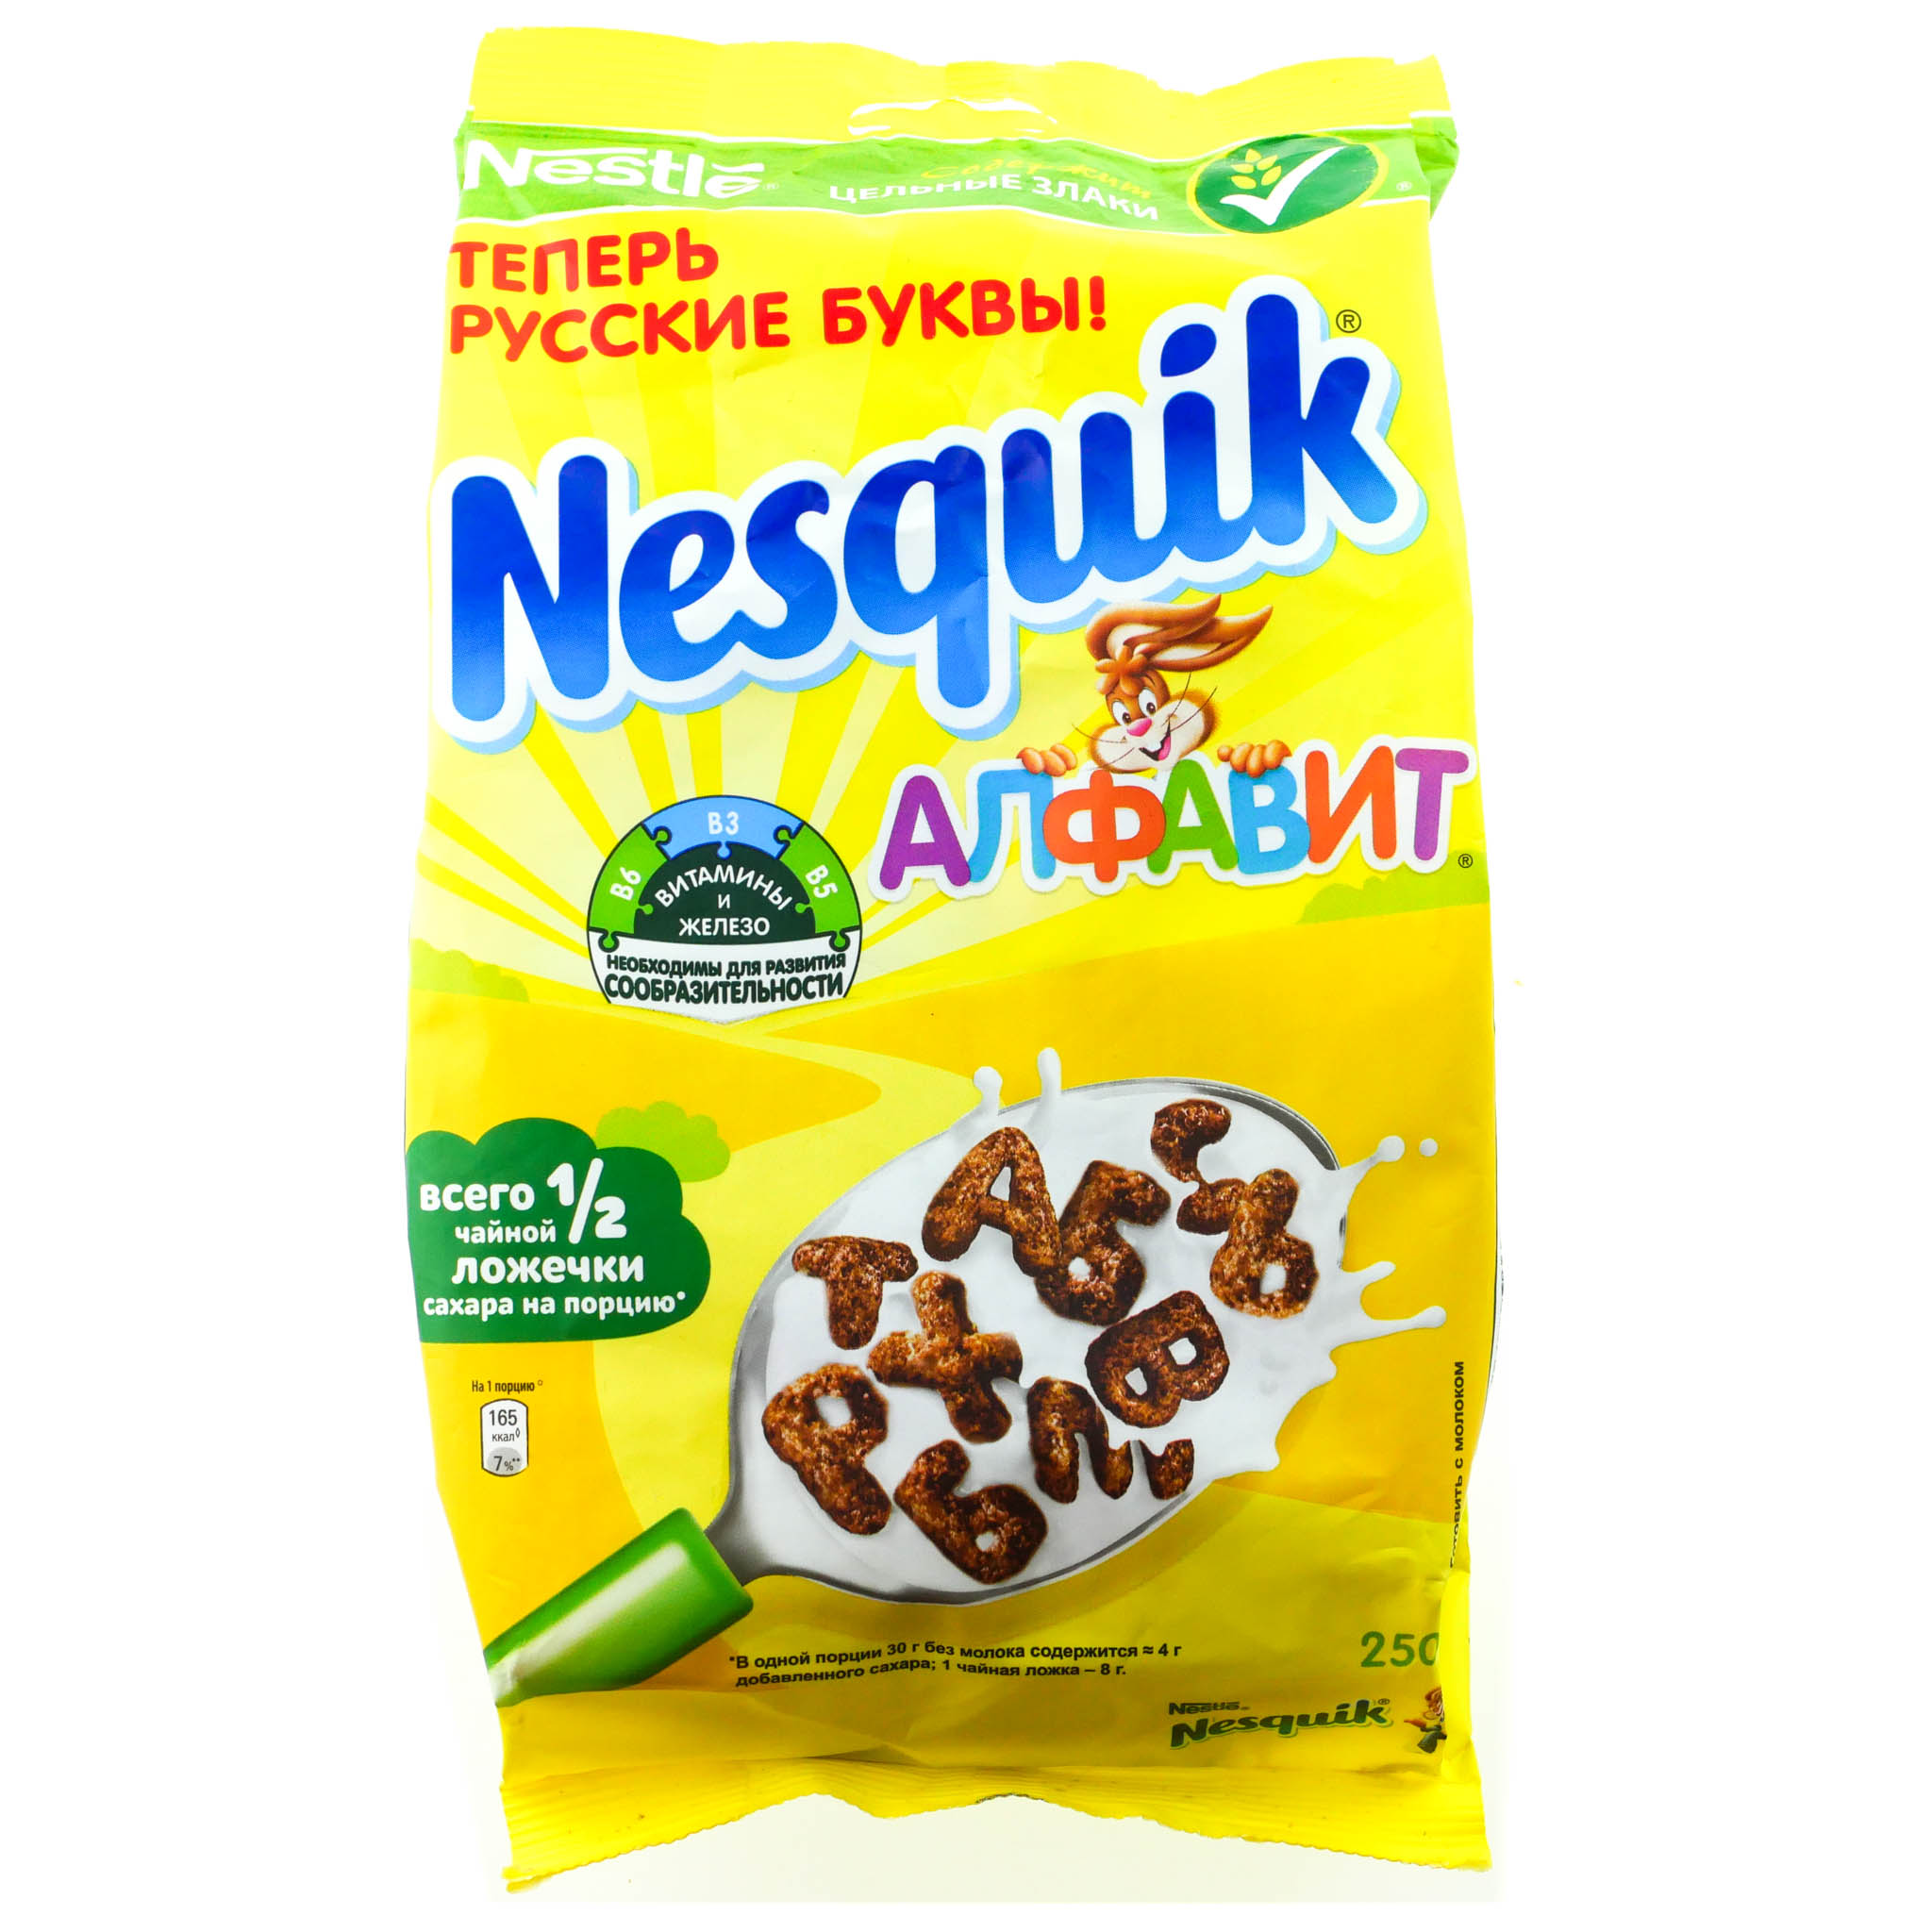 Купить несквик шарики. Готовый завтрак Nestle Nesquik алфавит 250 г. Готовый завтрак Nestle Nesquik алфавит. Готовый завтрак Несквик 250гр пакет. Несквик сух завтрак 250г.